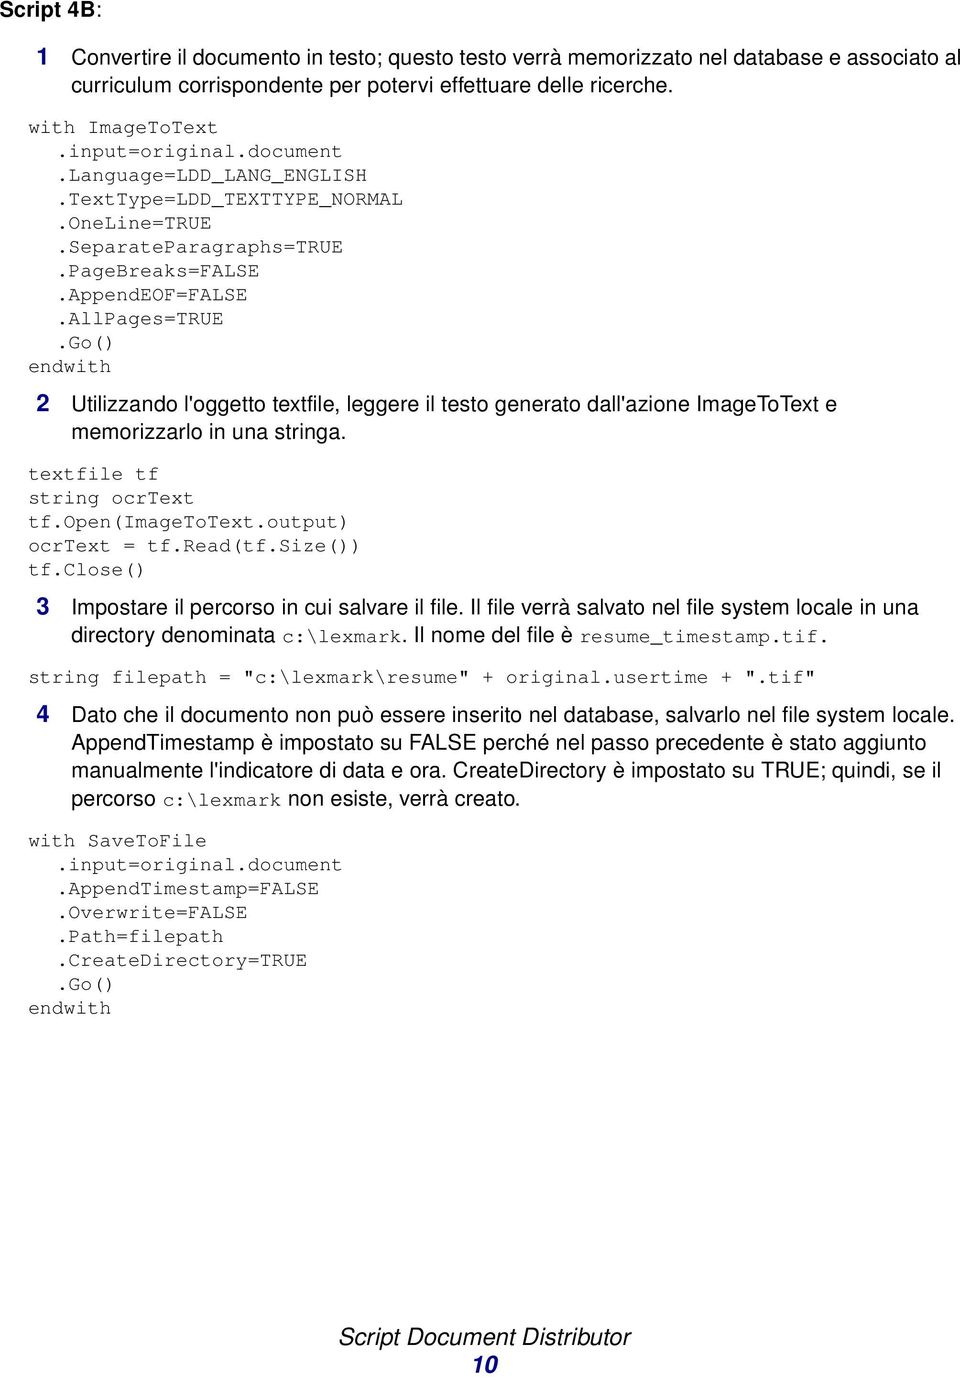 AllPages=TRUE 2 Utilizzando l'oggetto textfile, leggere il testo generato dall'azione ImageToText e memorizzarlo in una stringa. textfile tf string ocrtext tf.open(imagetotext.output) ocrtext = tf.